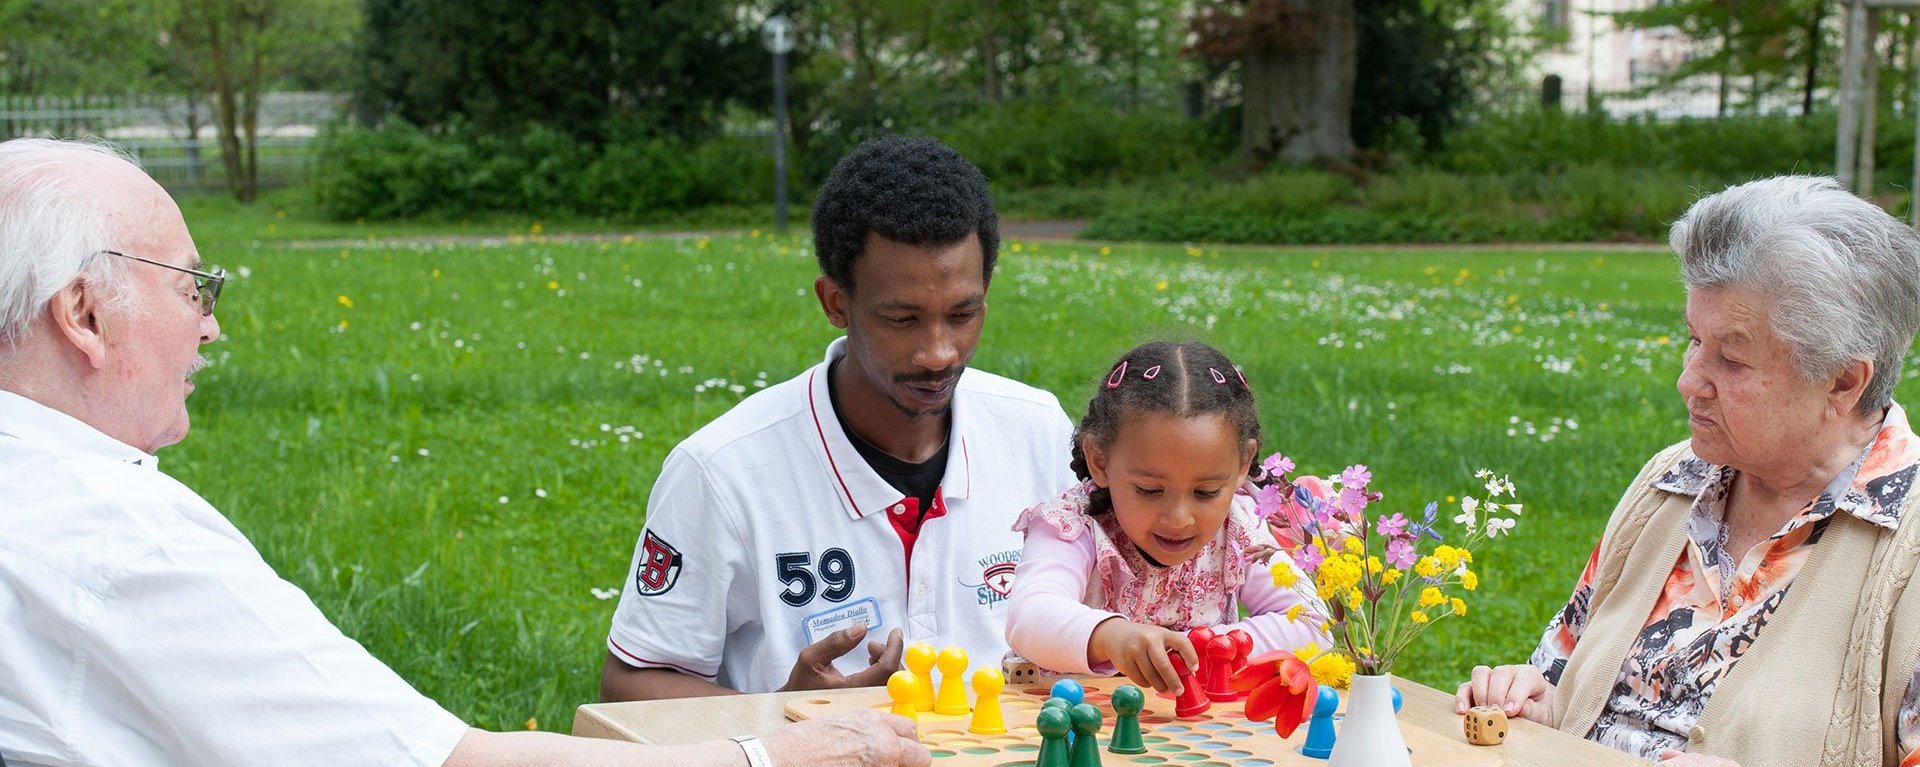 Zwei Bewohner Spielen mit einer Pflegefachkraft und einem kleinen Kind ein Brettspiel